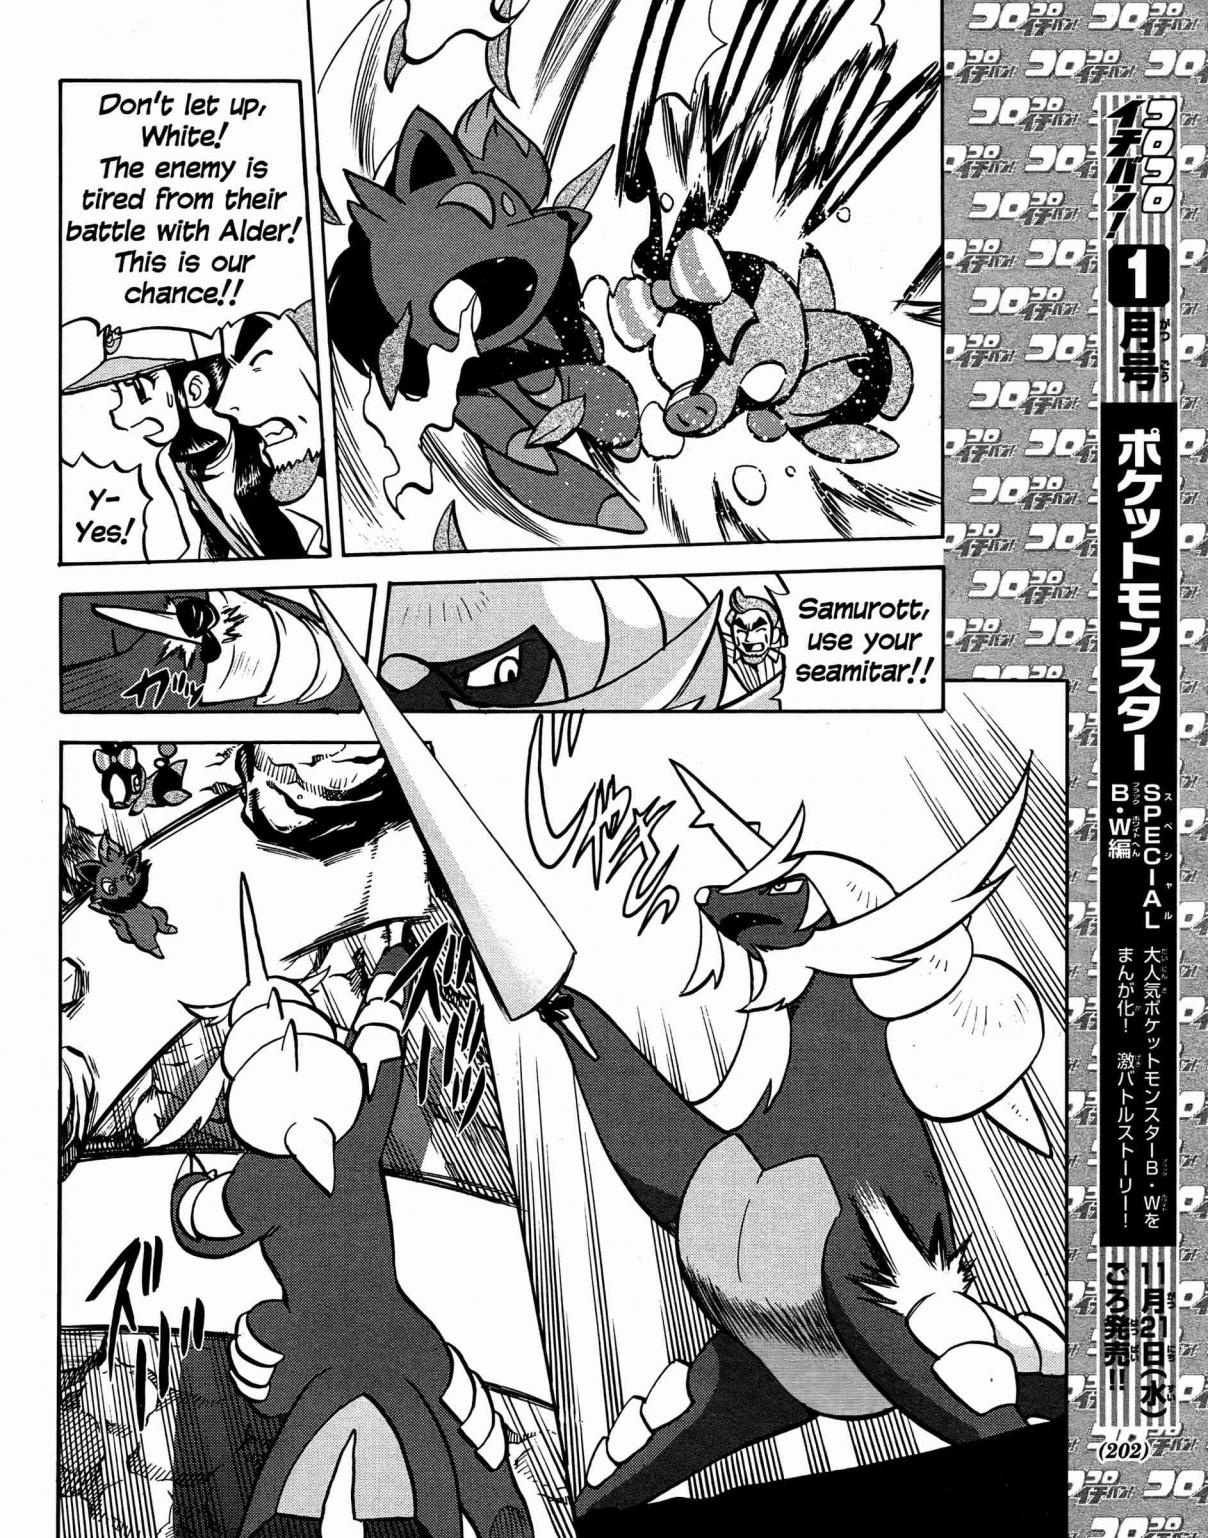 Pokémon Special Vol. 49 Ch. 510